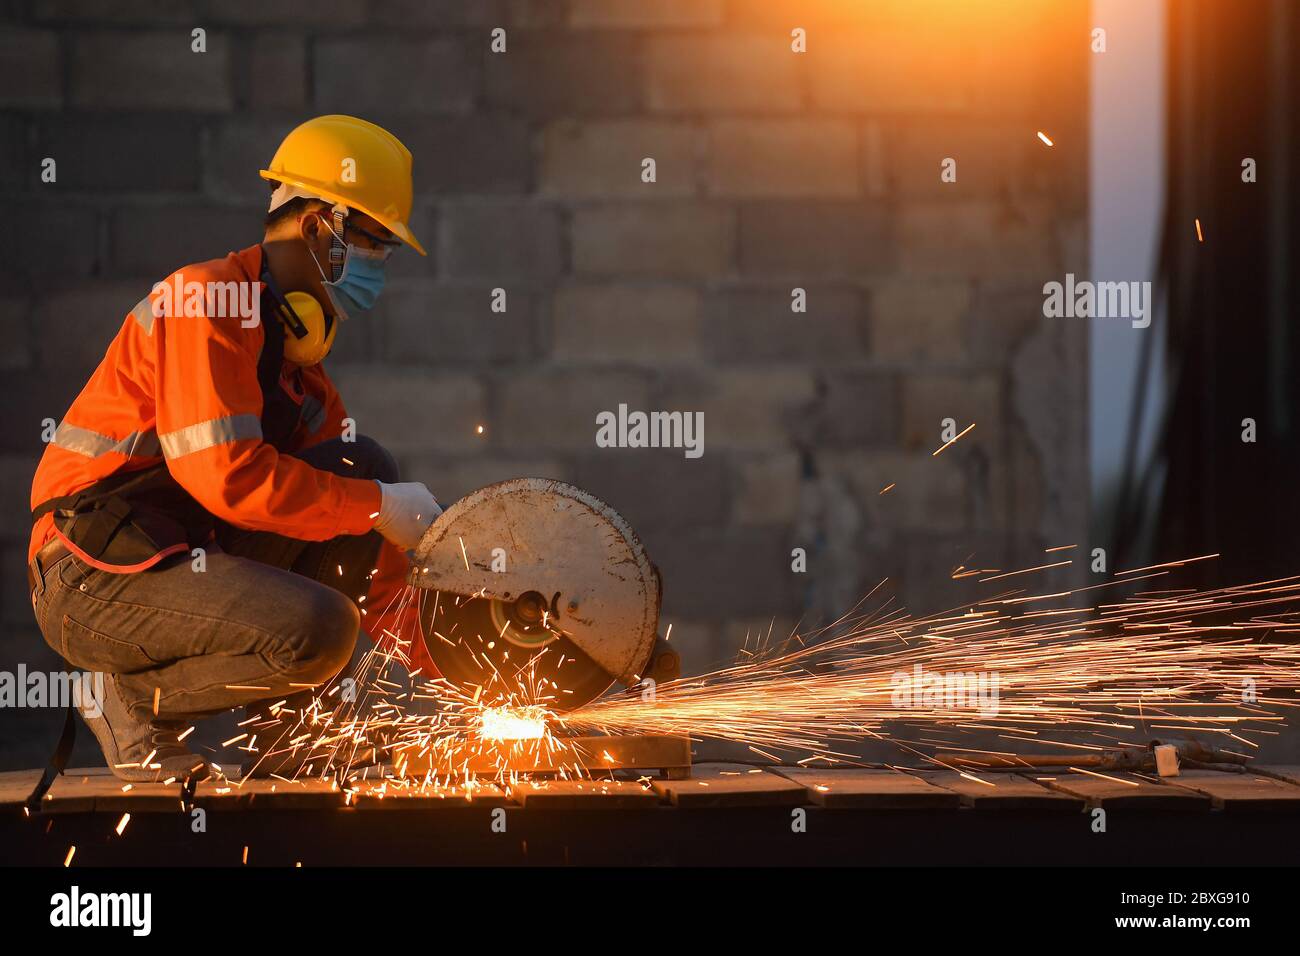 Travailleur industriel portant un masque facial coupant du métal avec une meuleuse métallique Banque D'Images